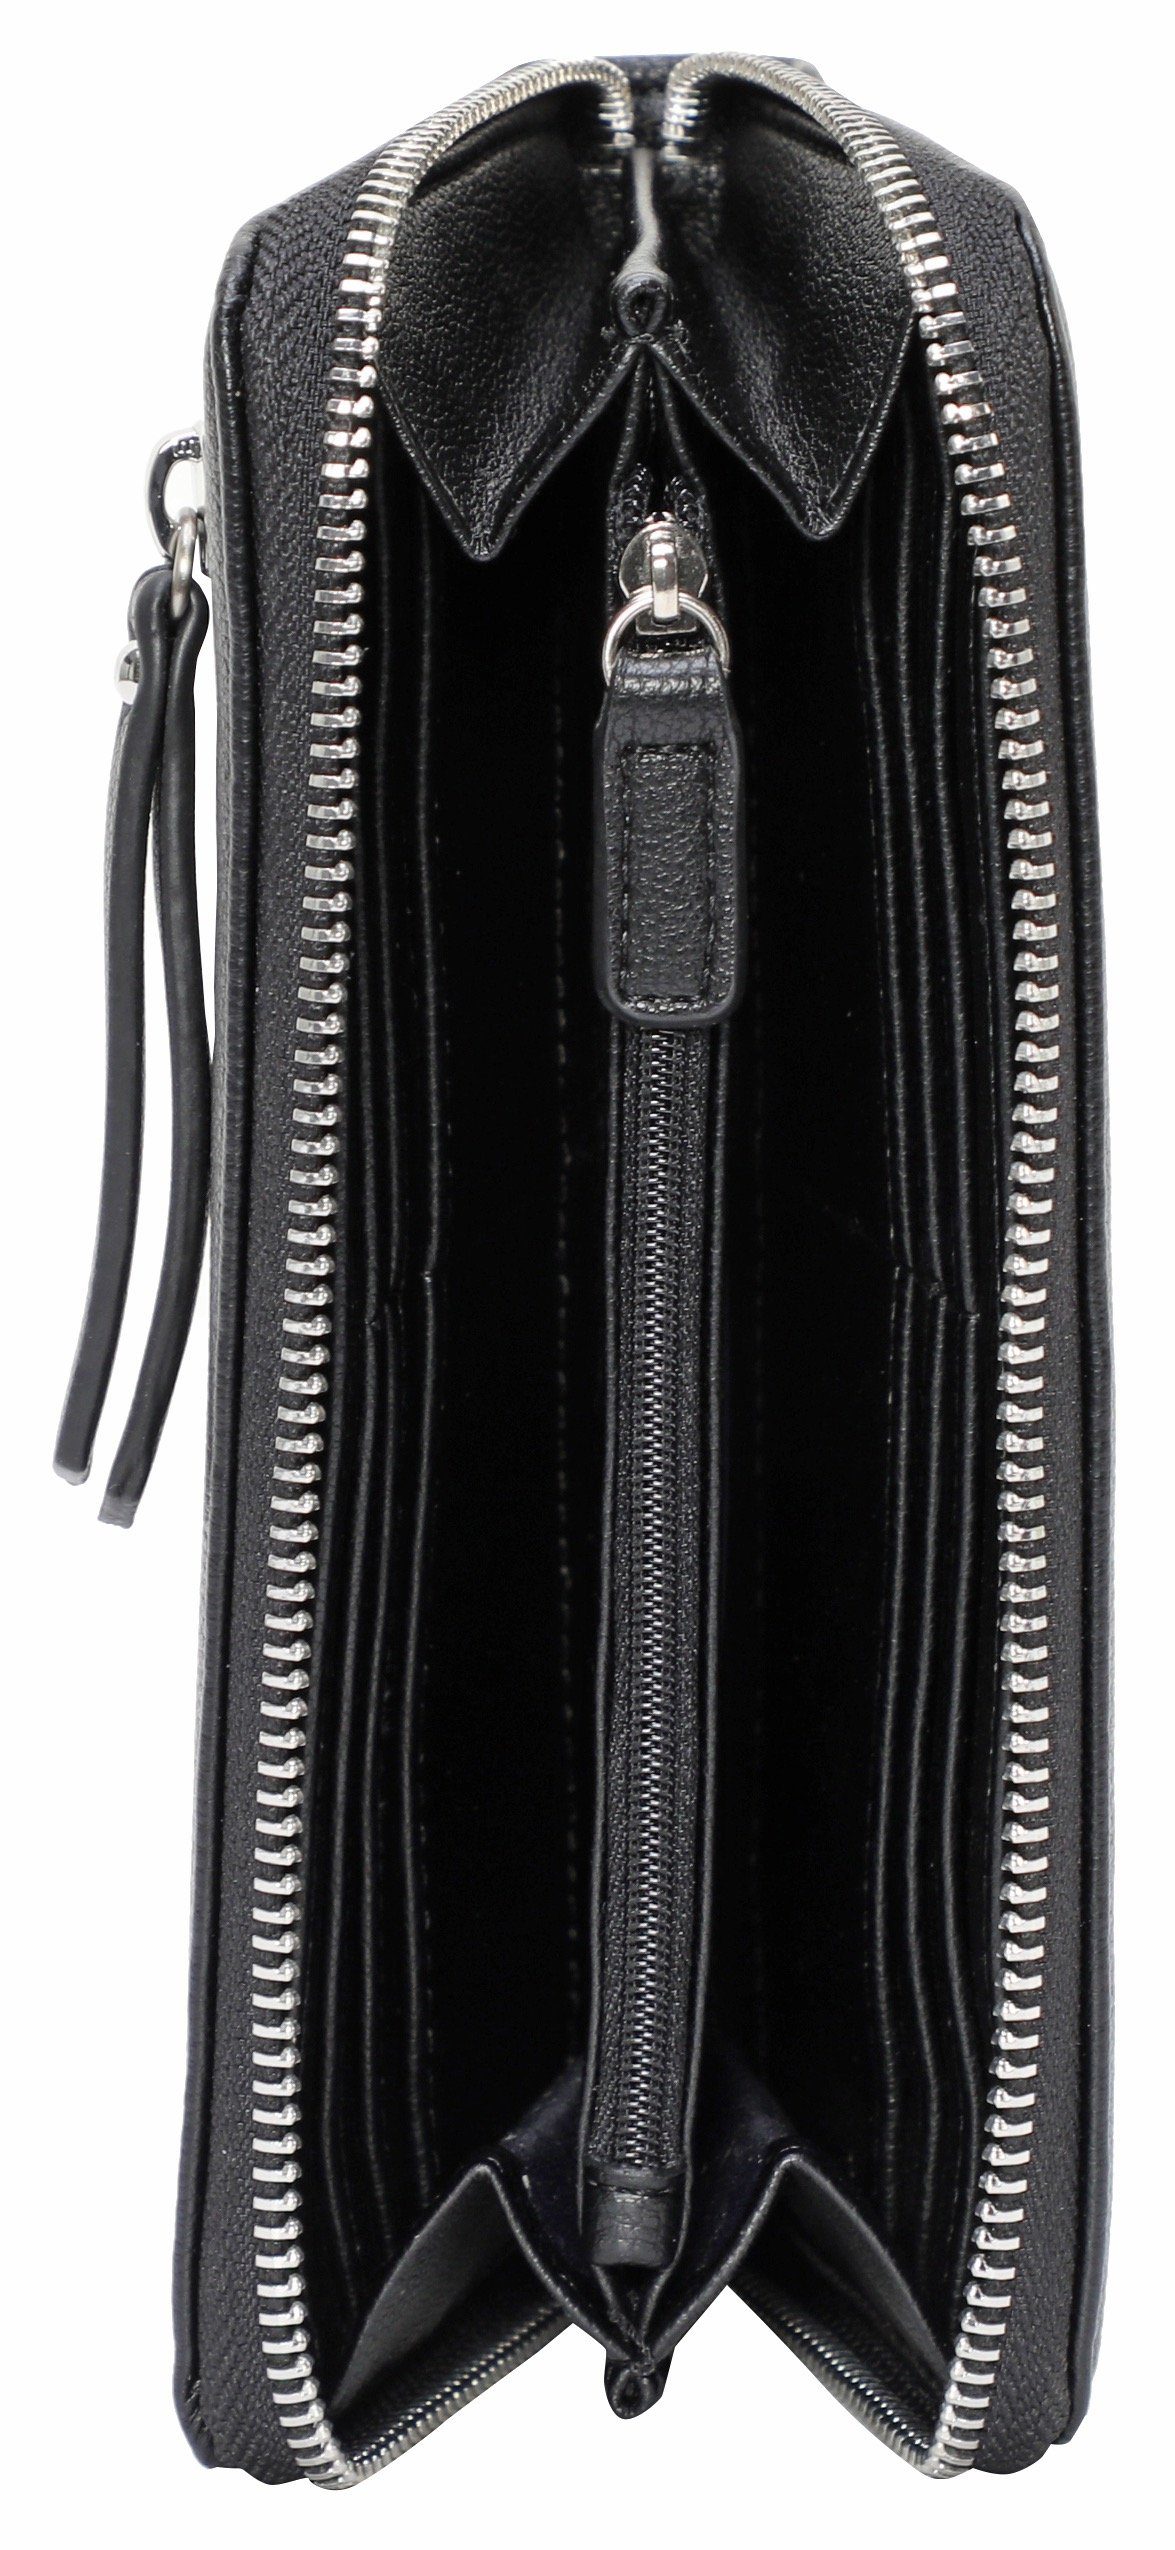 GERRY WEBER Bags purse mit viel lh13z, black use Geldbörse Stauraum daily